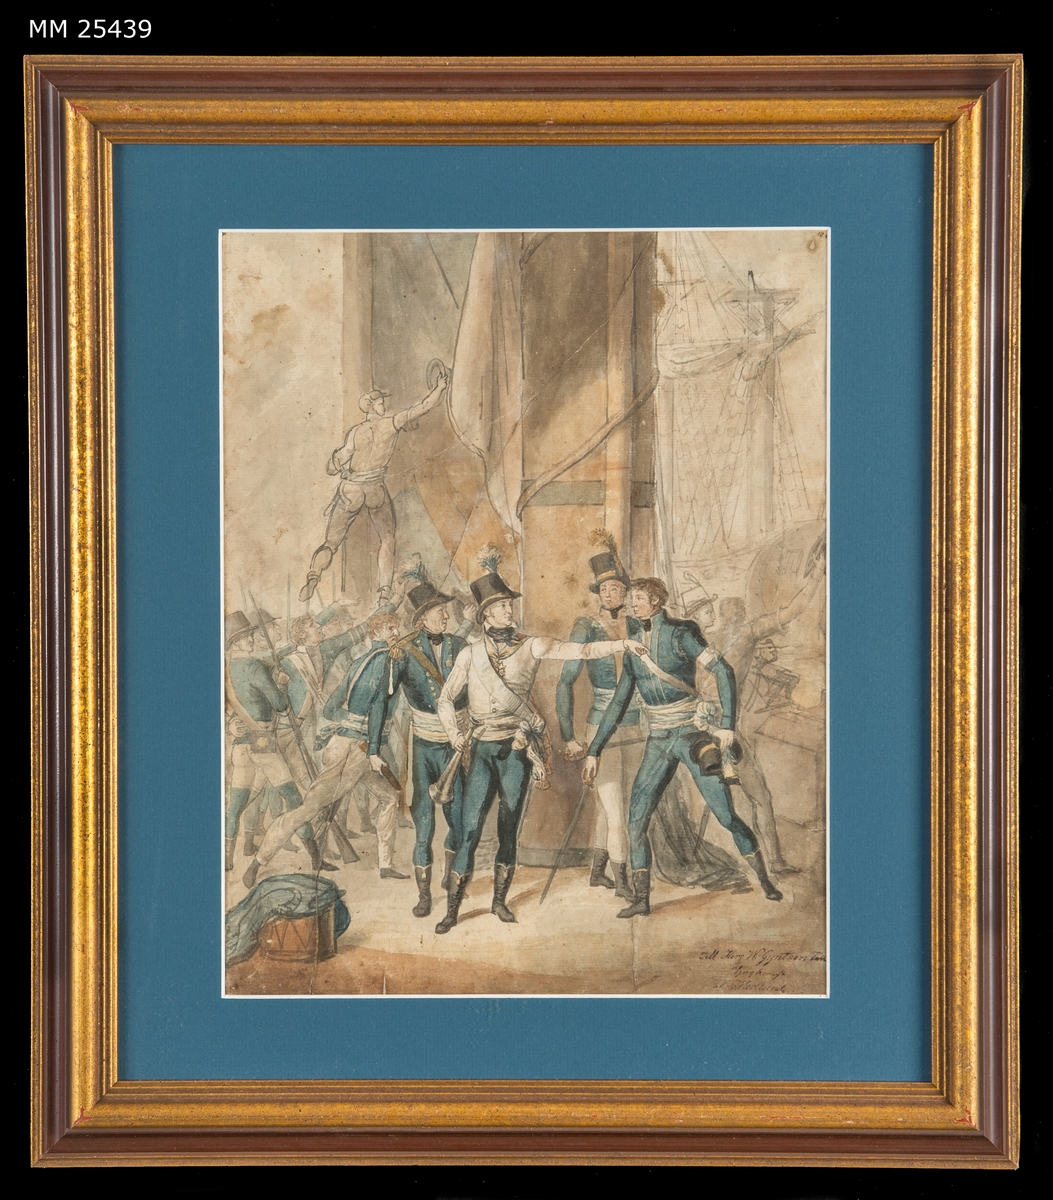 Akvarell som visar hertig Karl (sedermera Karl XIII) på ett fartygsdäck under slaget vid Hogland år 1788. Hertigen är klädd i vit uniformsjacka med blå byxor och hatt med plym, han pekar med högerhanden och håller en ropare i vänsterhanden. Runt honom står tre officerare med blå uniformer och bakom dem syns en av fartygets master. I bakgrunden syns svenska soldater och sjömän med bajonettförsedda musköter. I förgrunden ligger en trumma på däck.

Målningen är inramad i en guldmålad profilerad ram och försedd med blå passepartout.